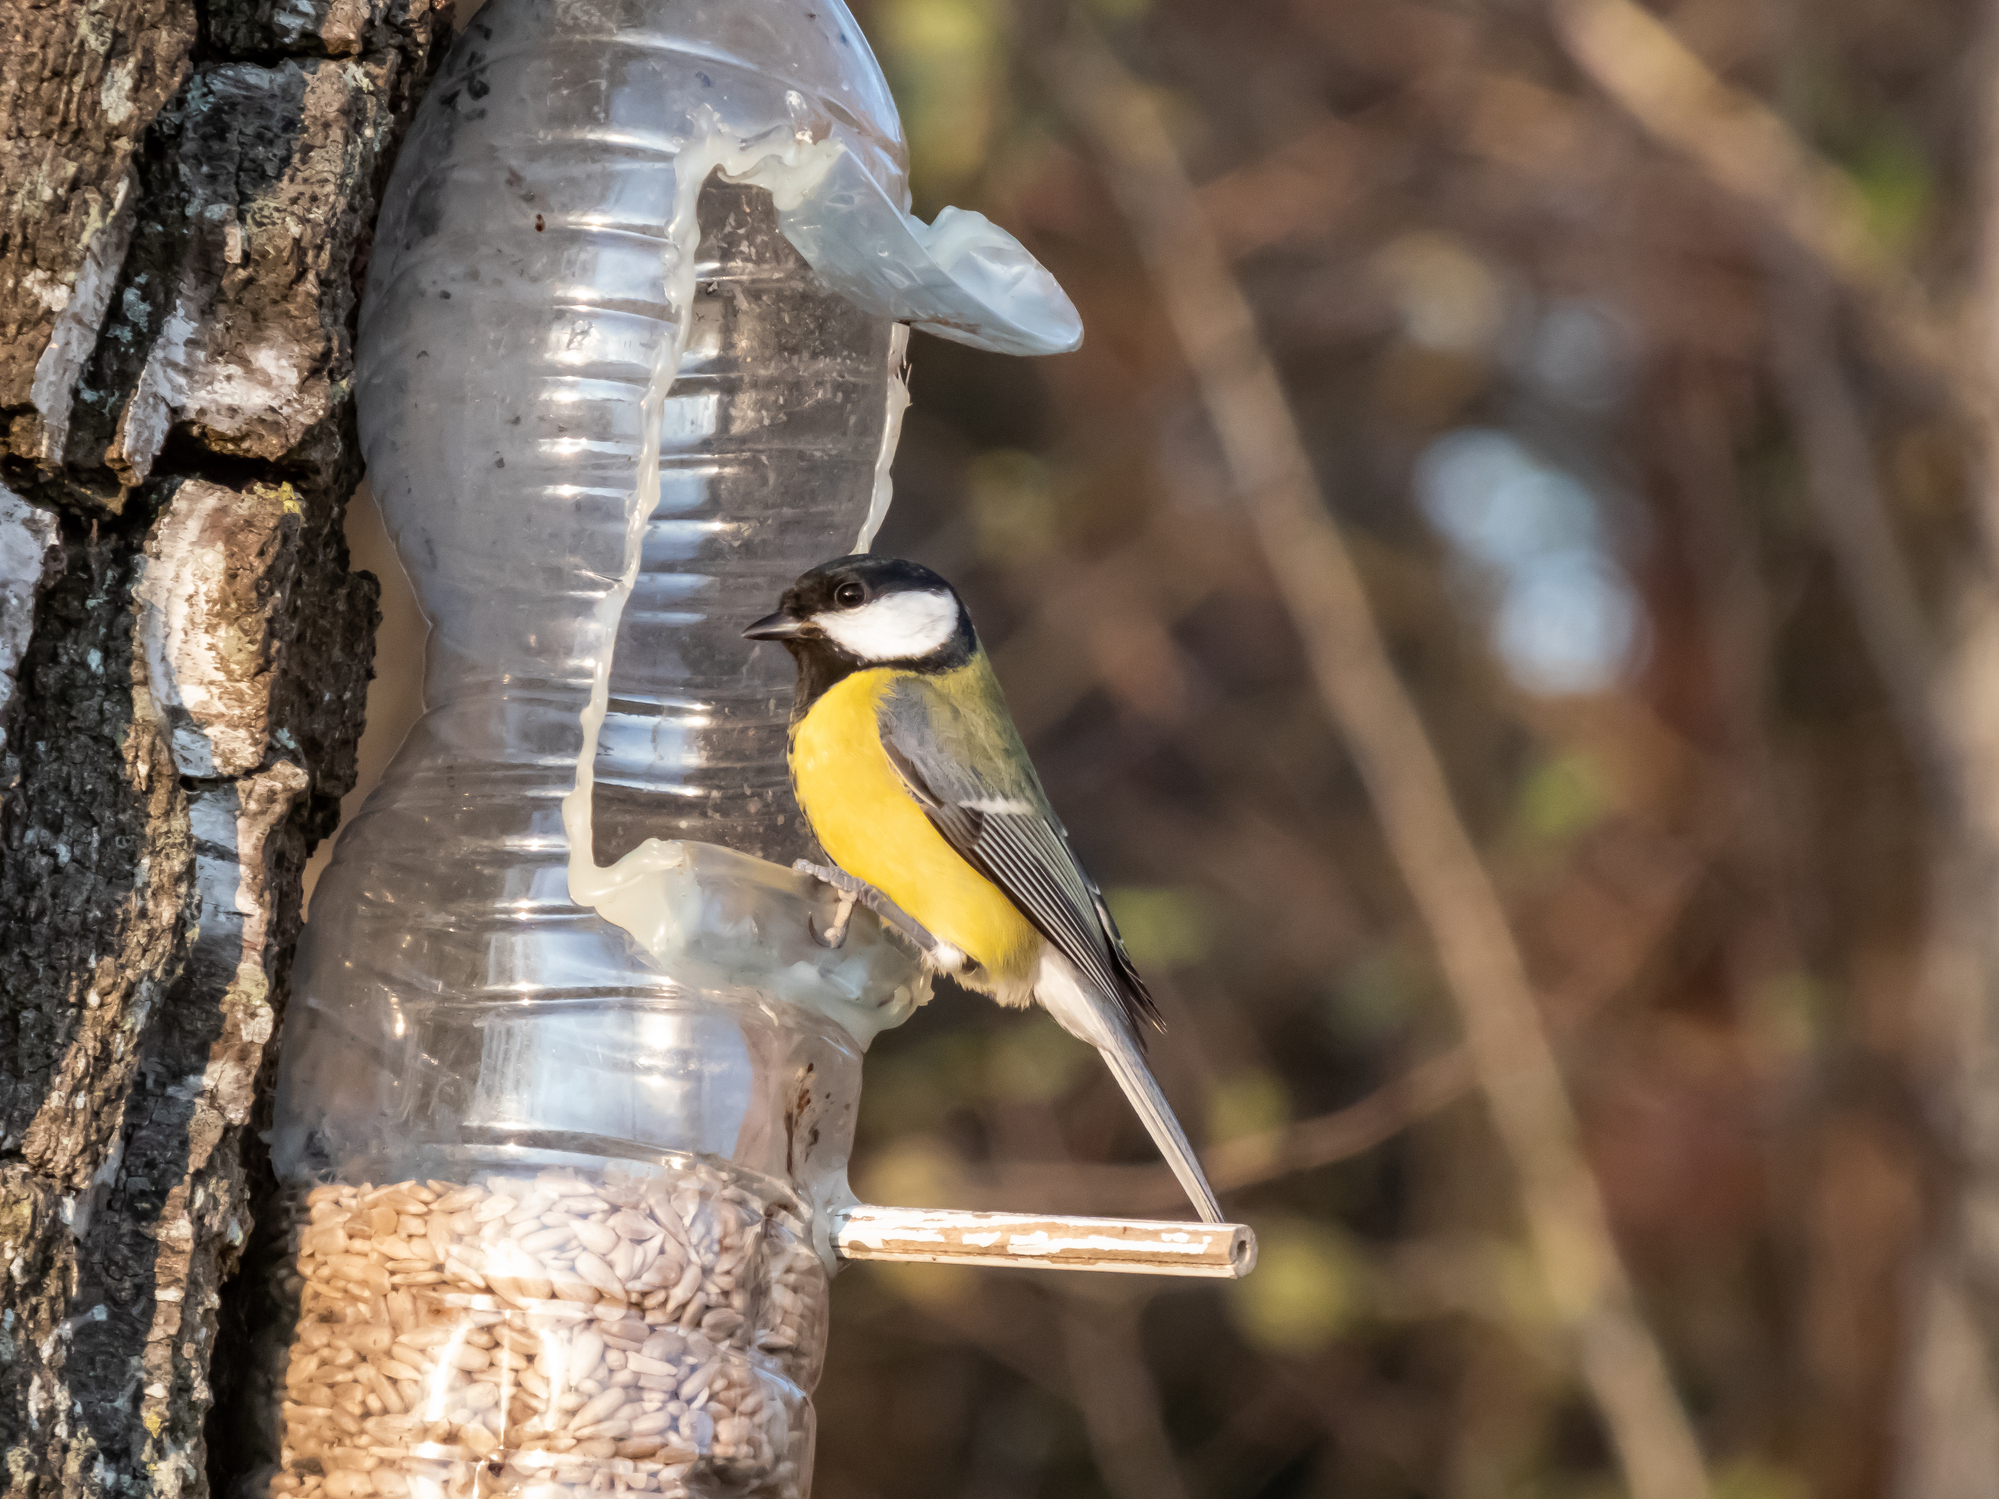 Découvrez comment fabriquer une mangeoire pour oiseaux avec une simple bouteille en plastique. Copyright (c) Kristine Radkovska/Istock.